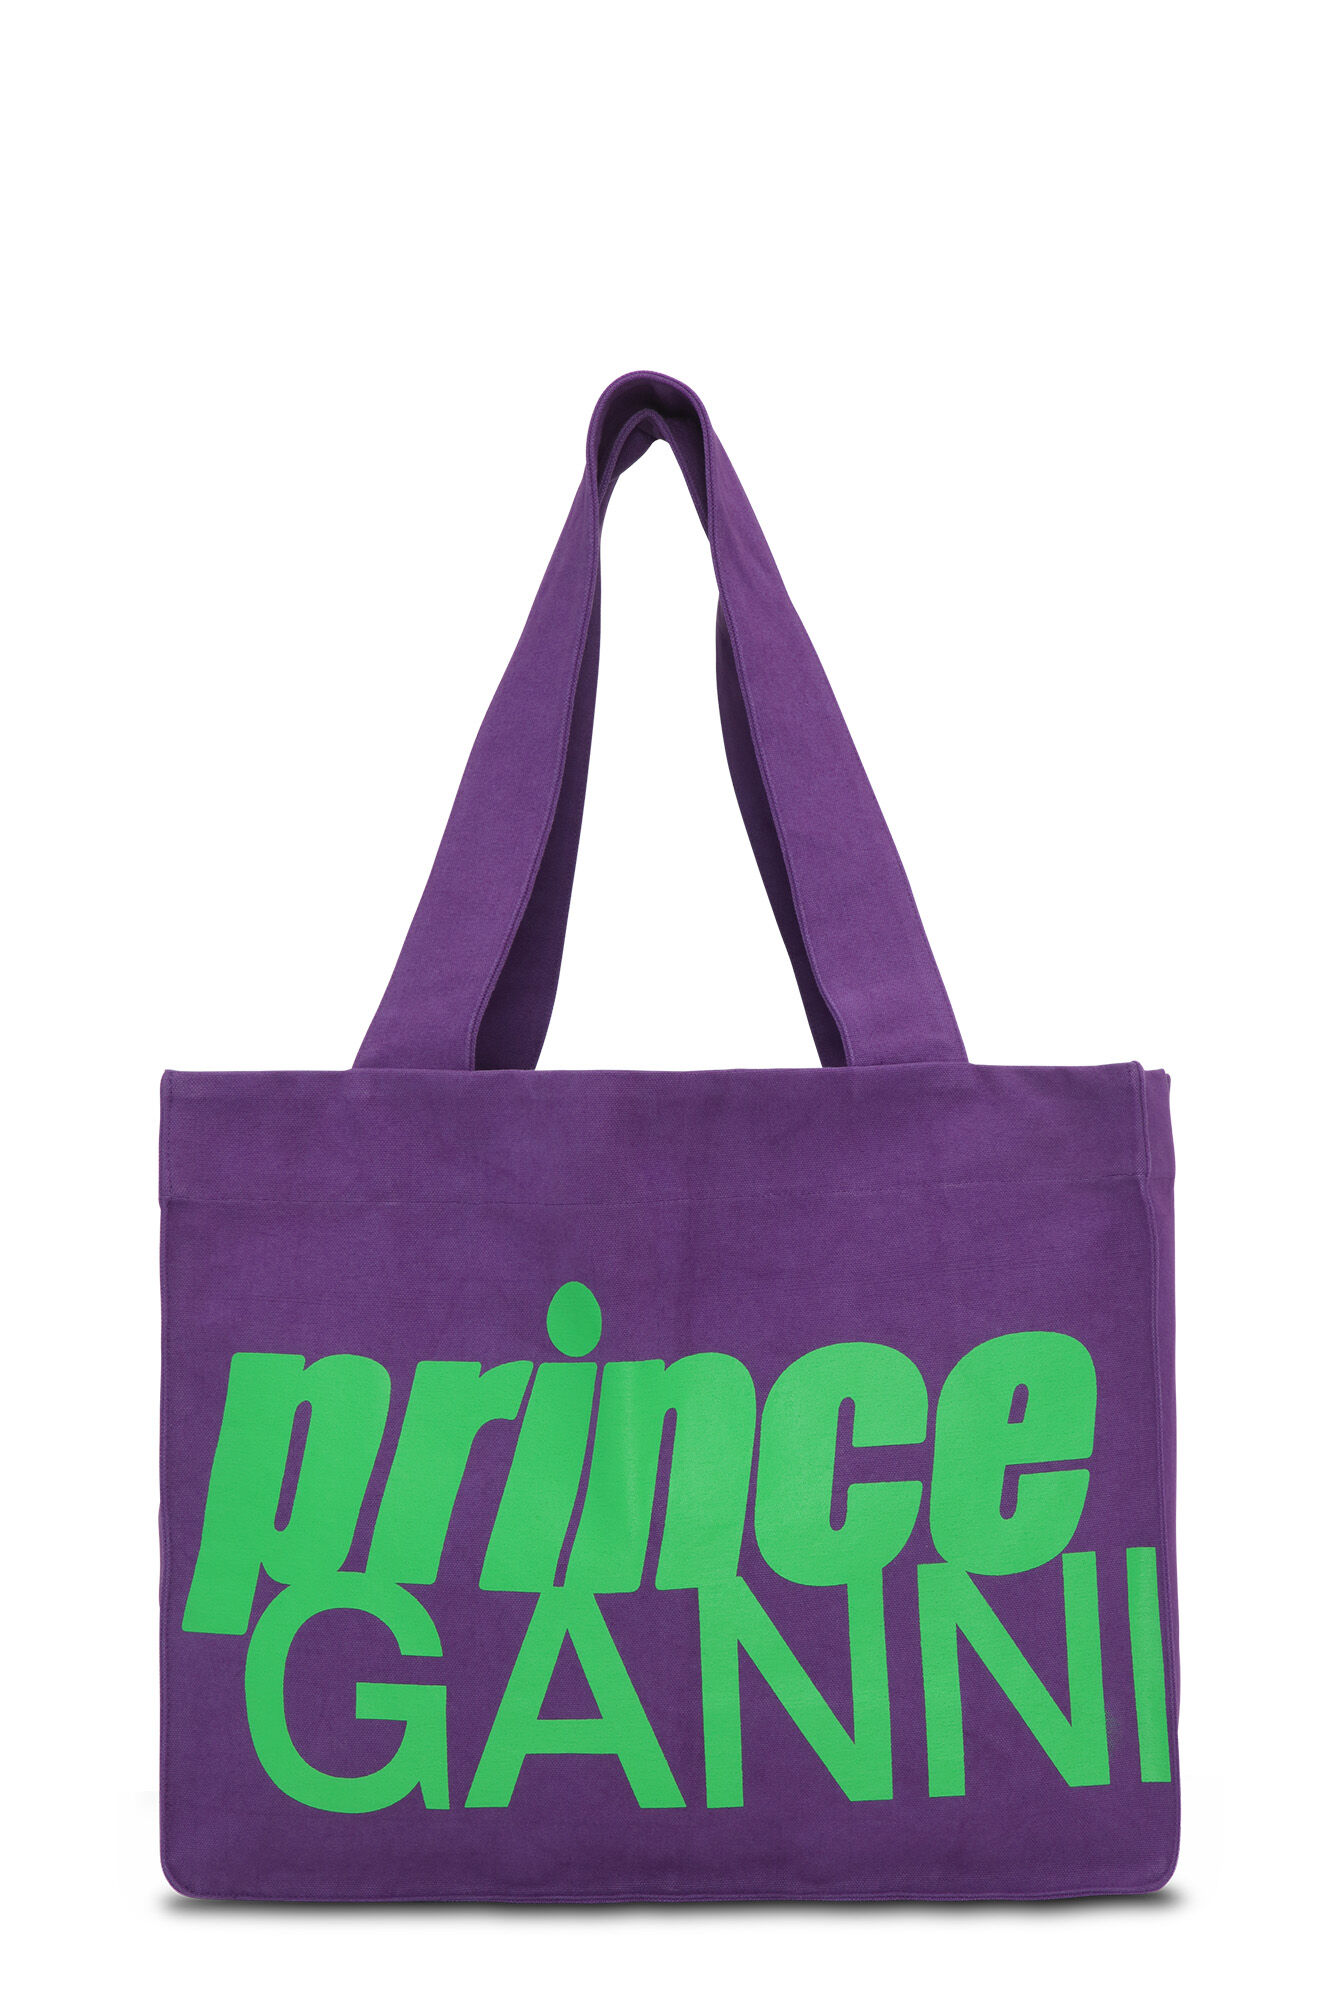 GANNI X Prince Canvas Bag | GANNI US